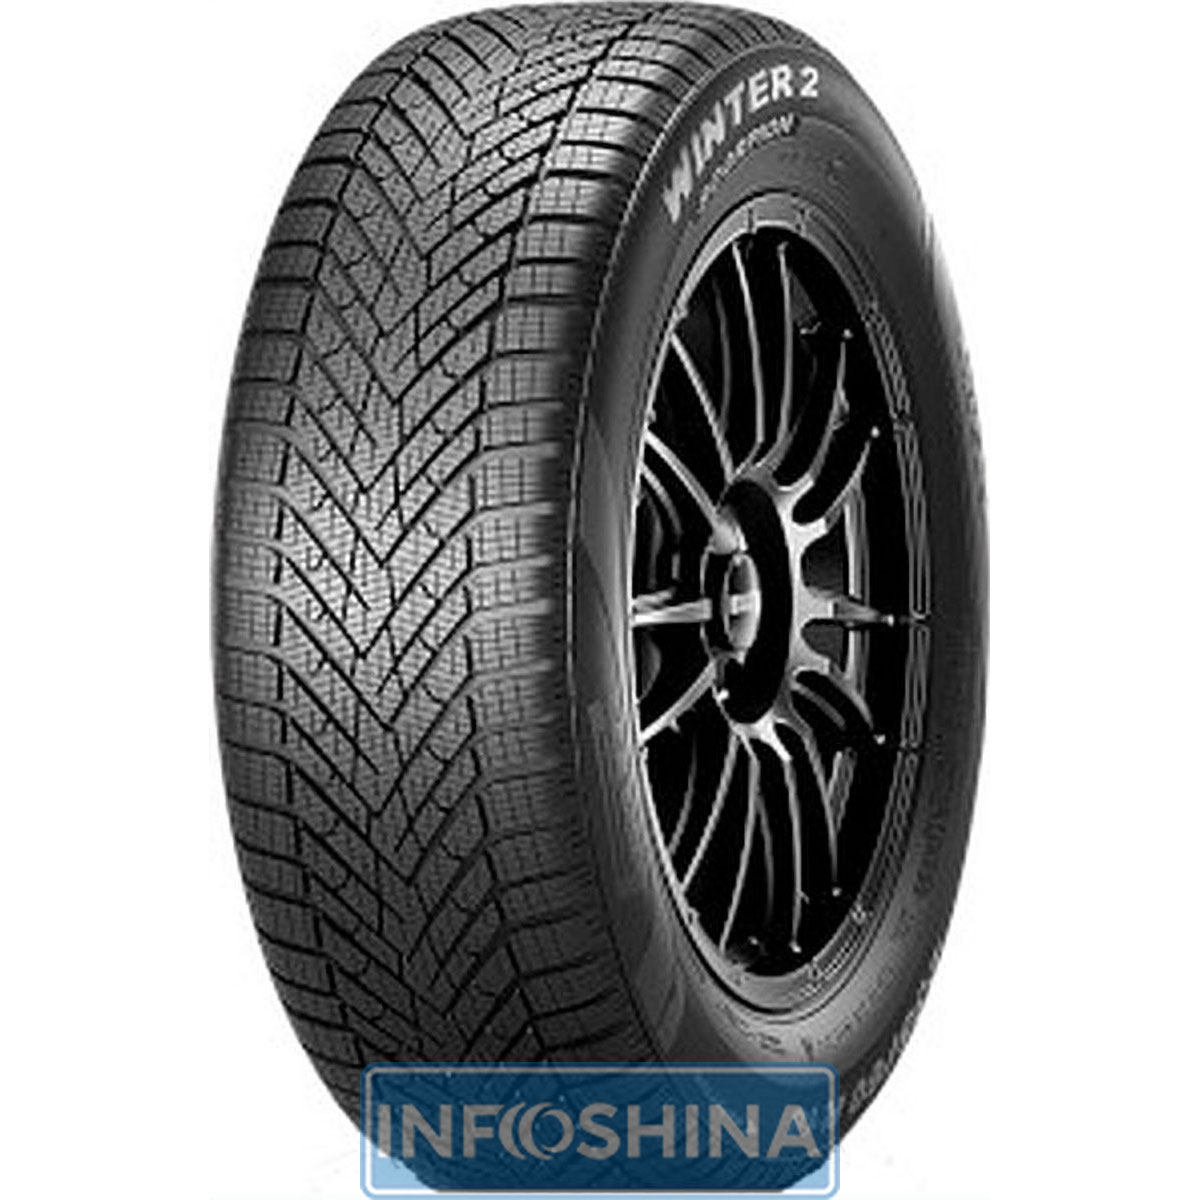 Купить шины Pirelli Scorpion Winter 2 265/35 R22 102V XL NCS